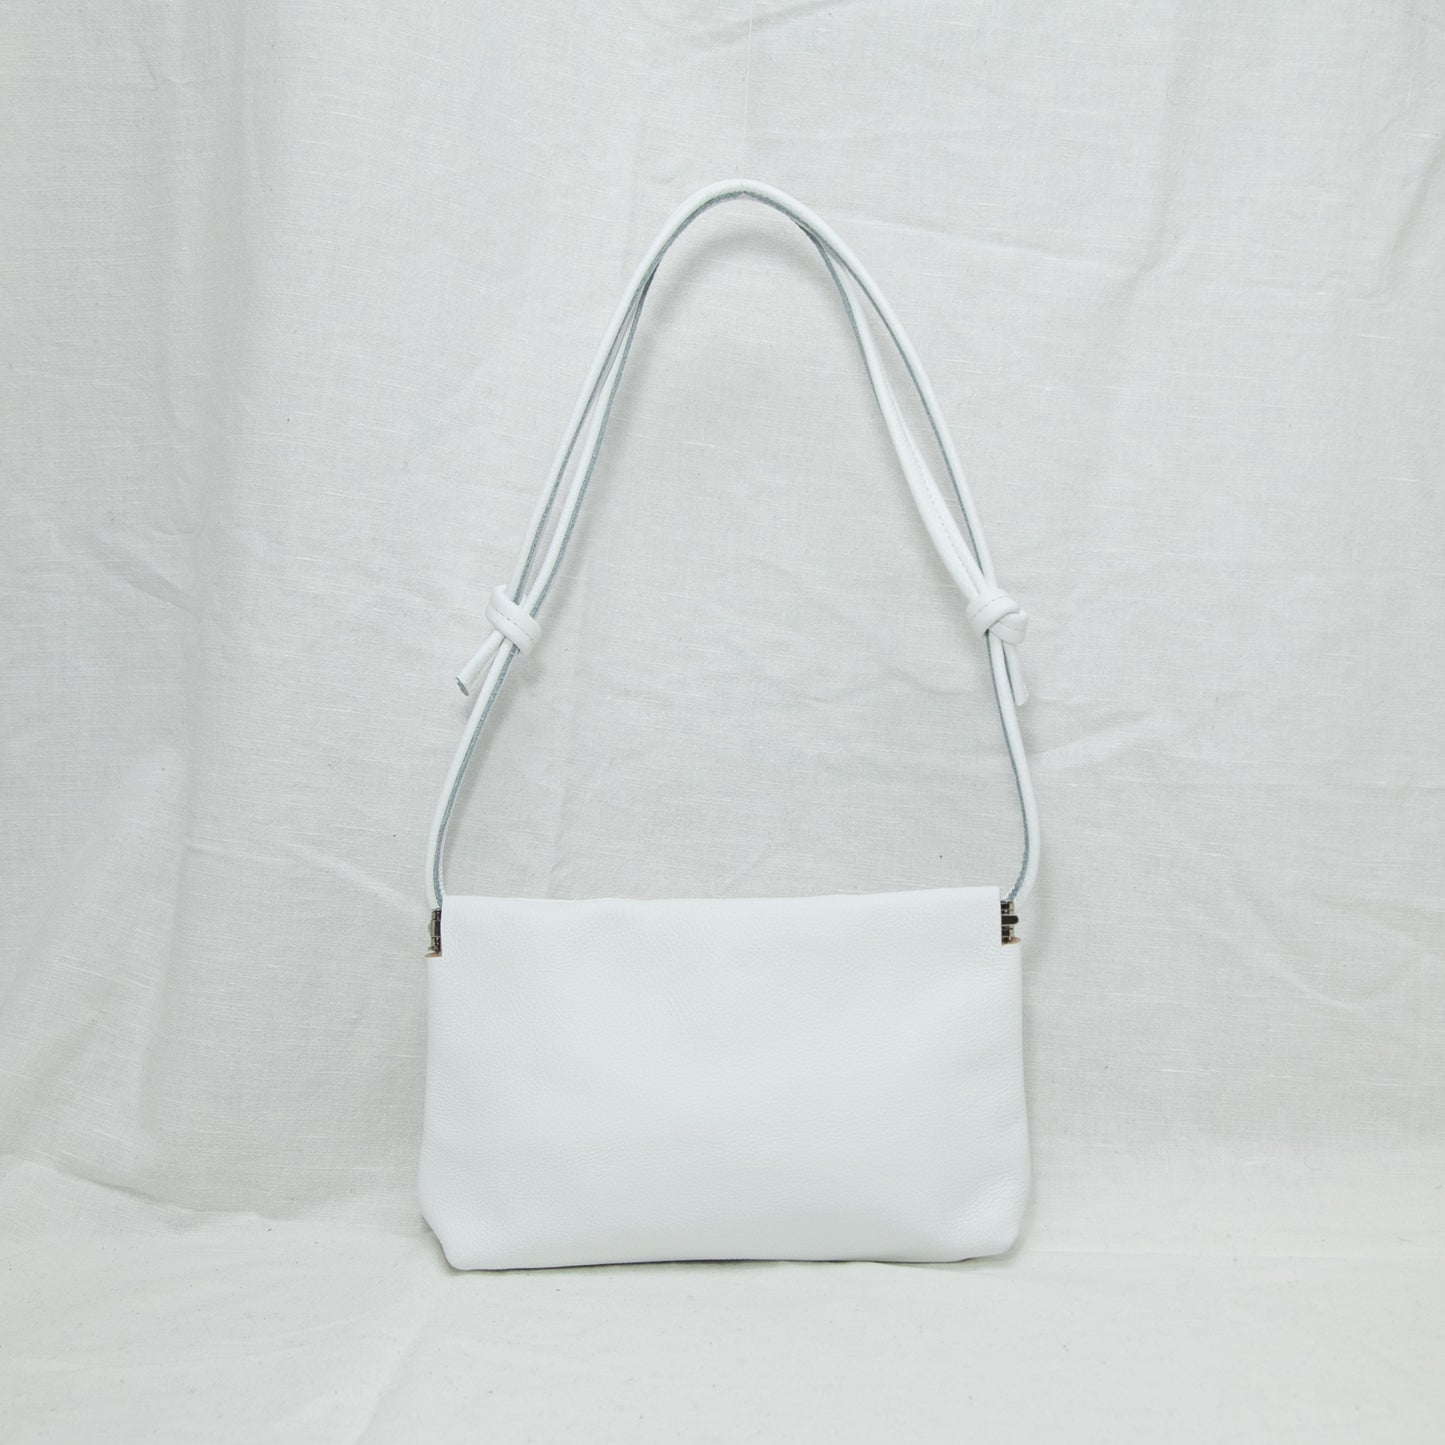 Kira Baguette Bag | White Pebbled